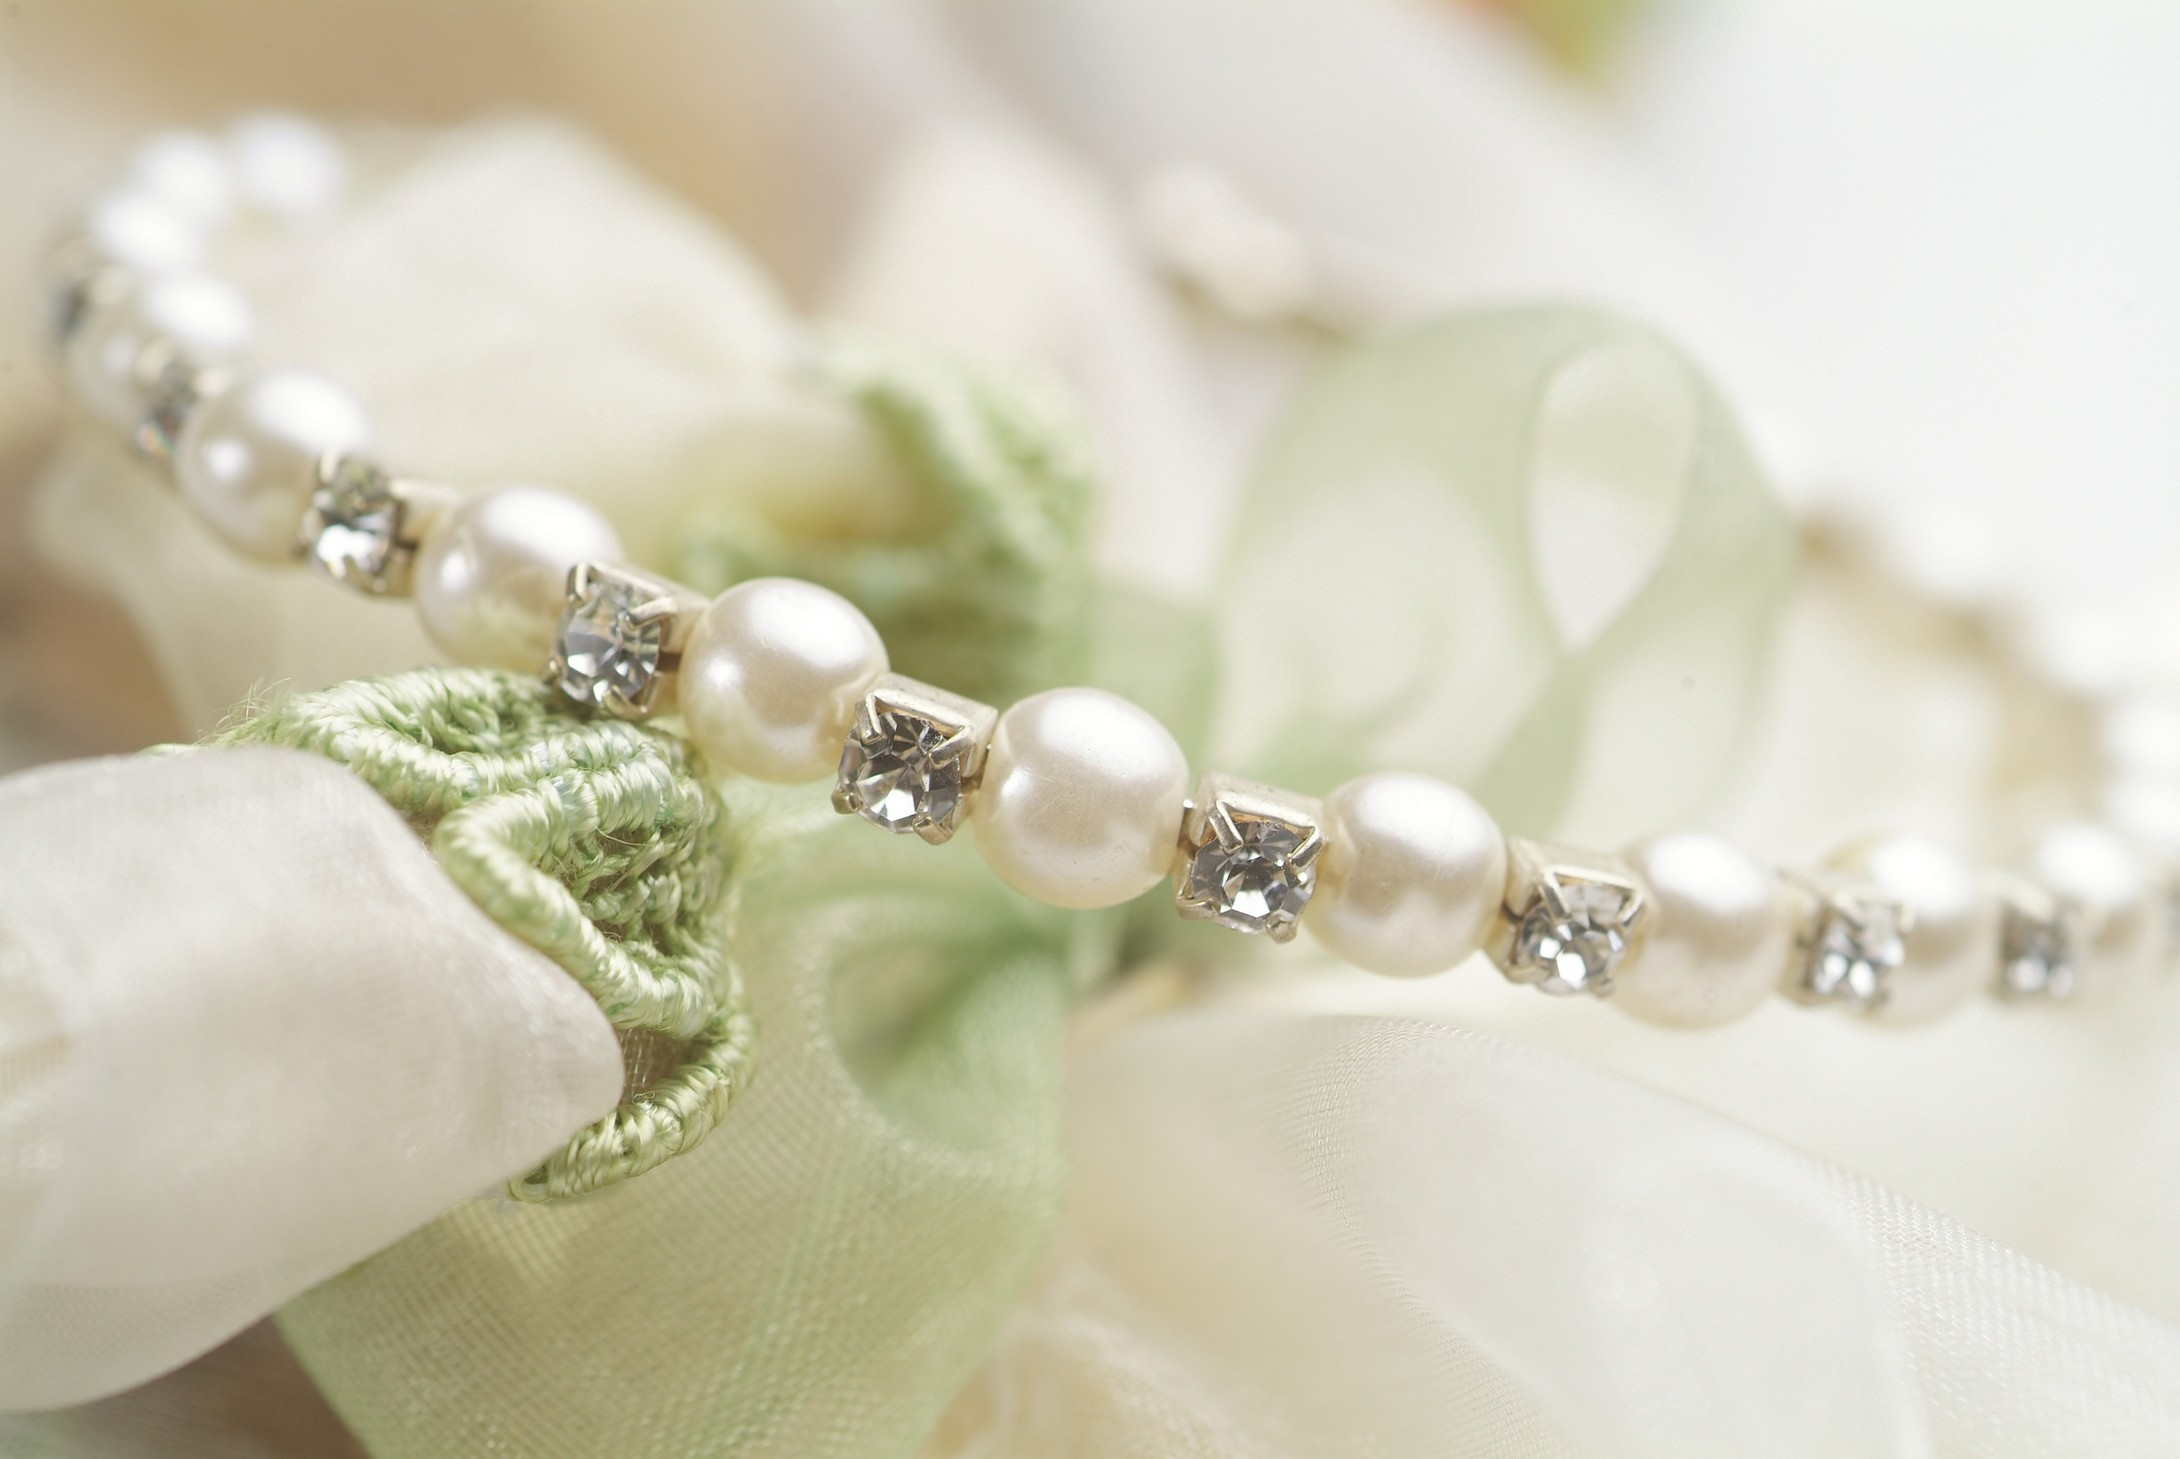 珍珠饰品,为你添加高贵典雅的气质